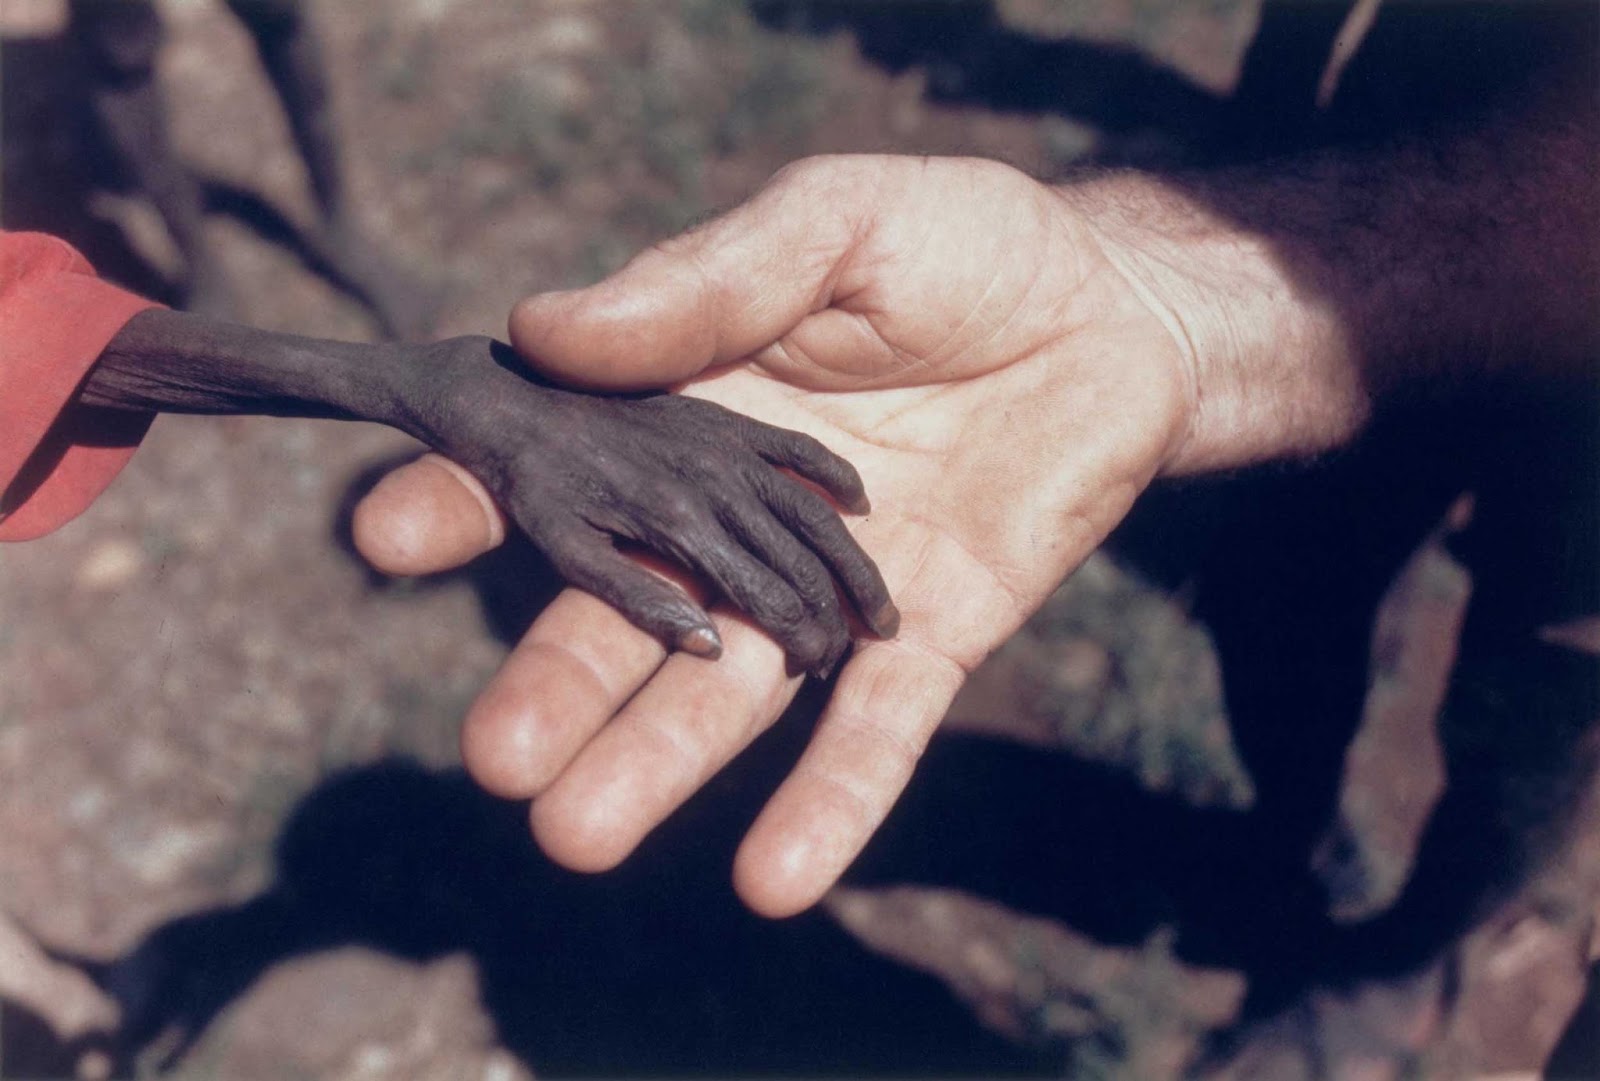 The starving boy in Uganda, 1980.